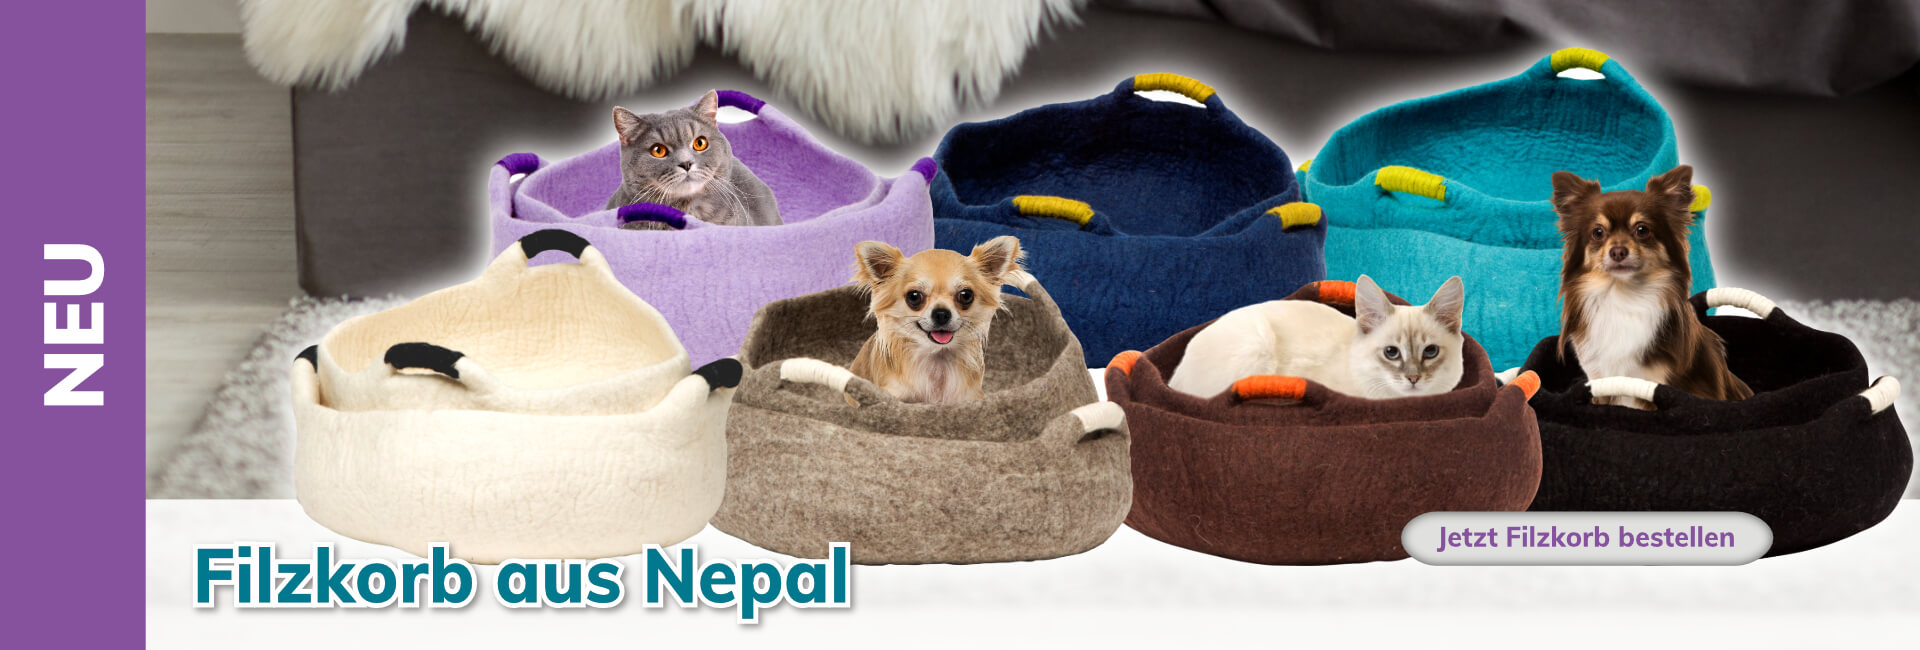 DDKC Filzkorb aus Nepal für Katzen & kleine Hunde